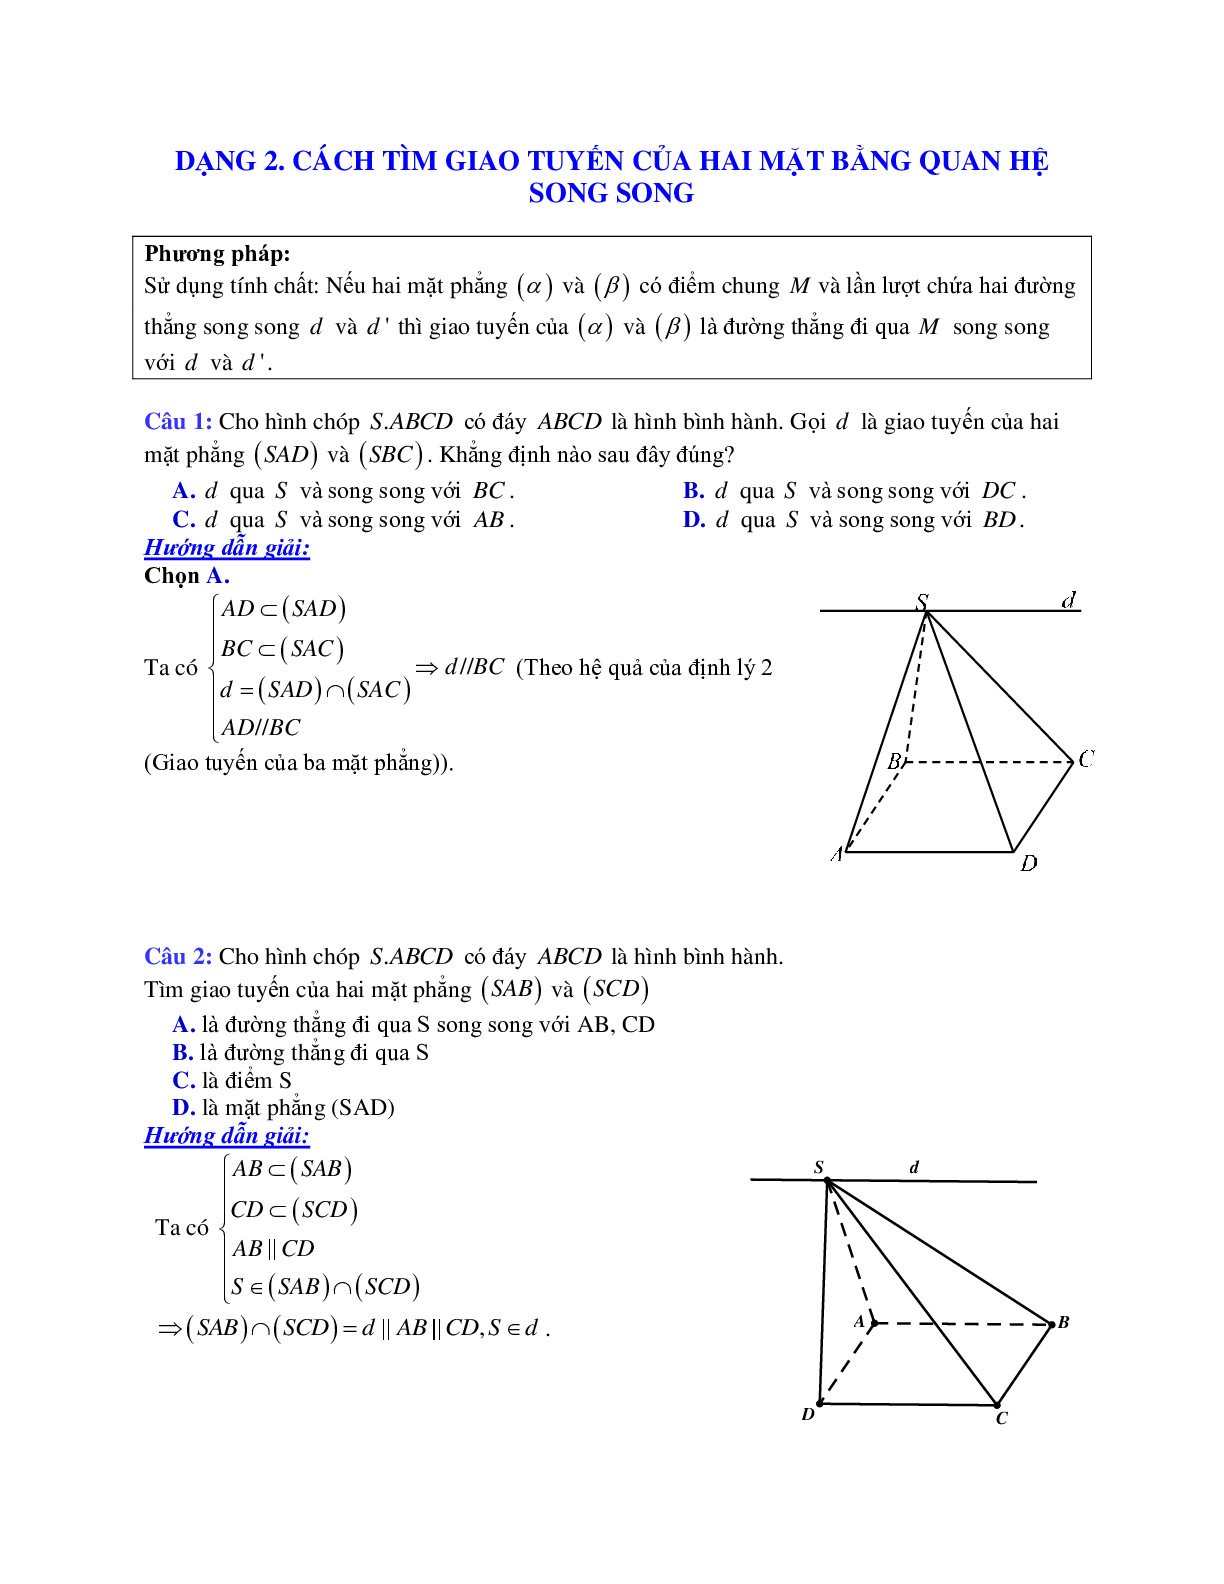 Phương pháp giải và bài tập về Cách tìm giao tuyến của hai mặt phẳng bằng quan hệ song song (trang 1)